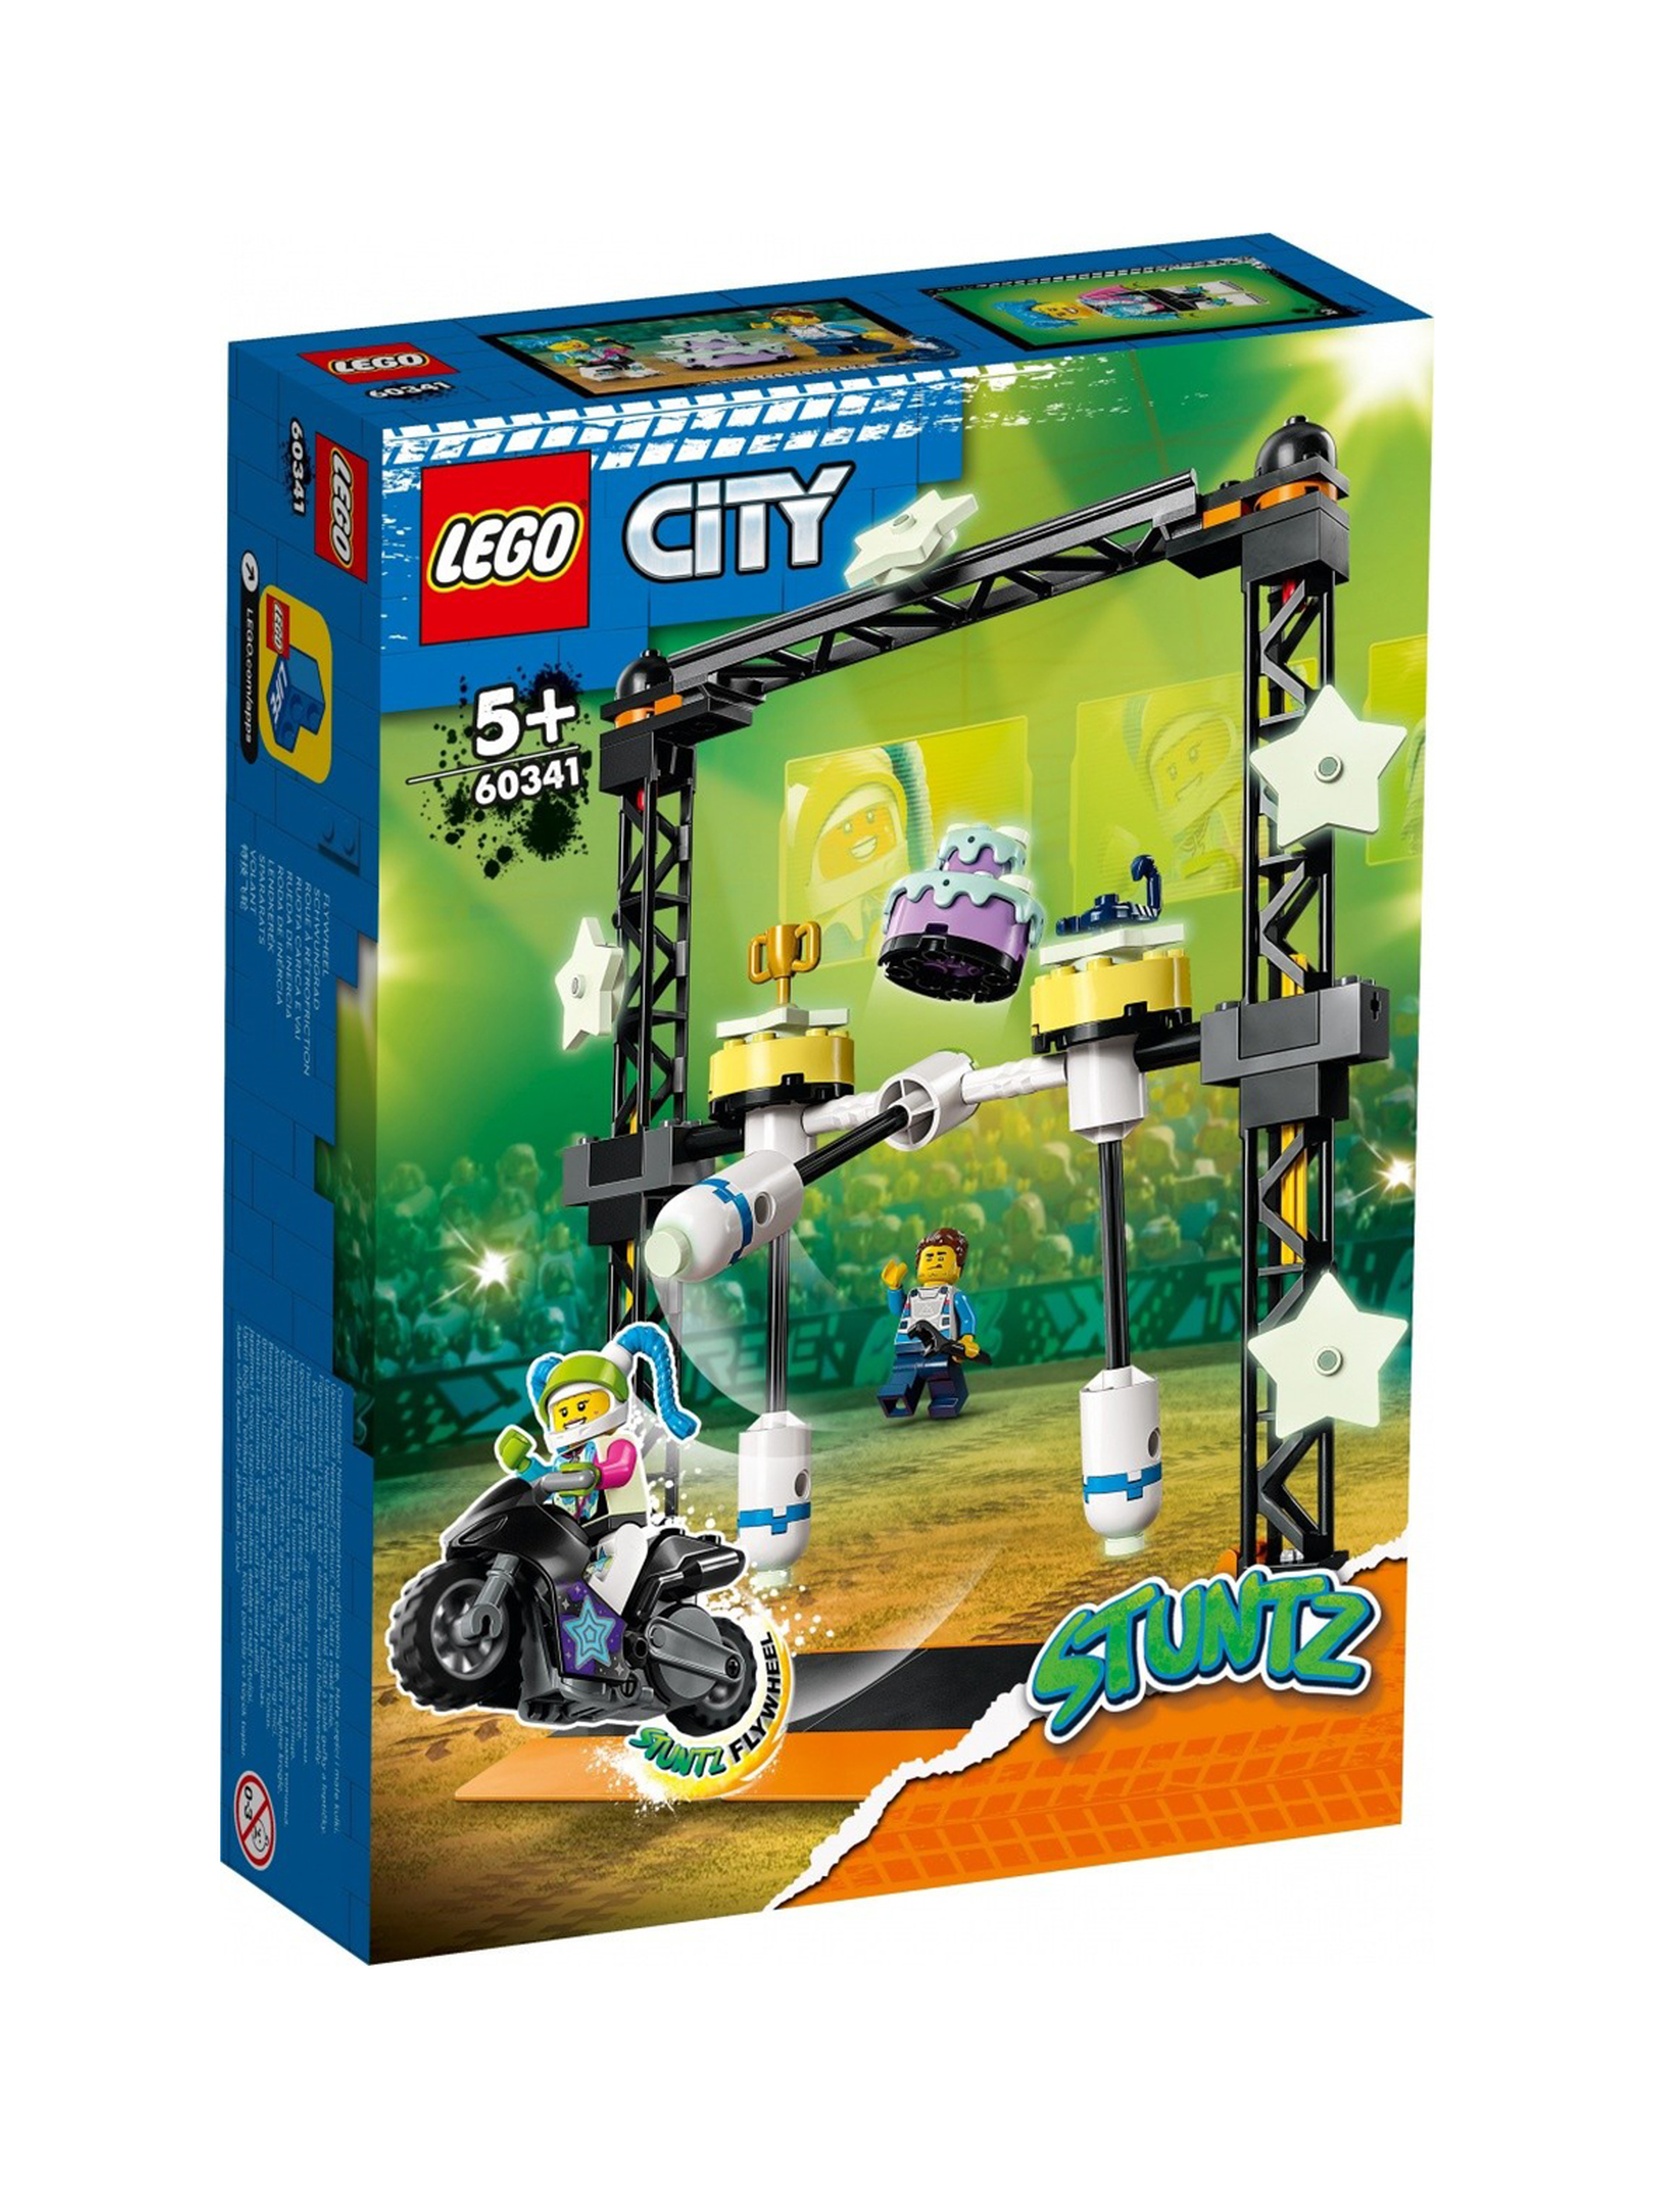 LEGO City - Wyzwanie kaskaderskie: przewracanie 60341 - 117 elementów, wiek 5+